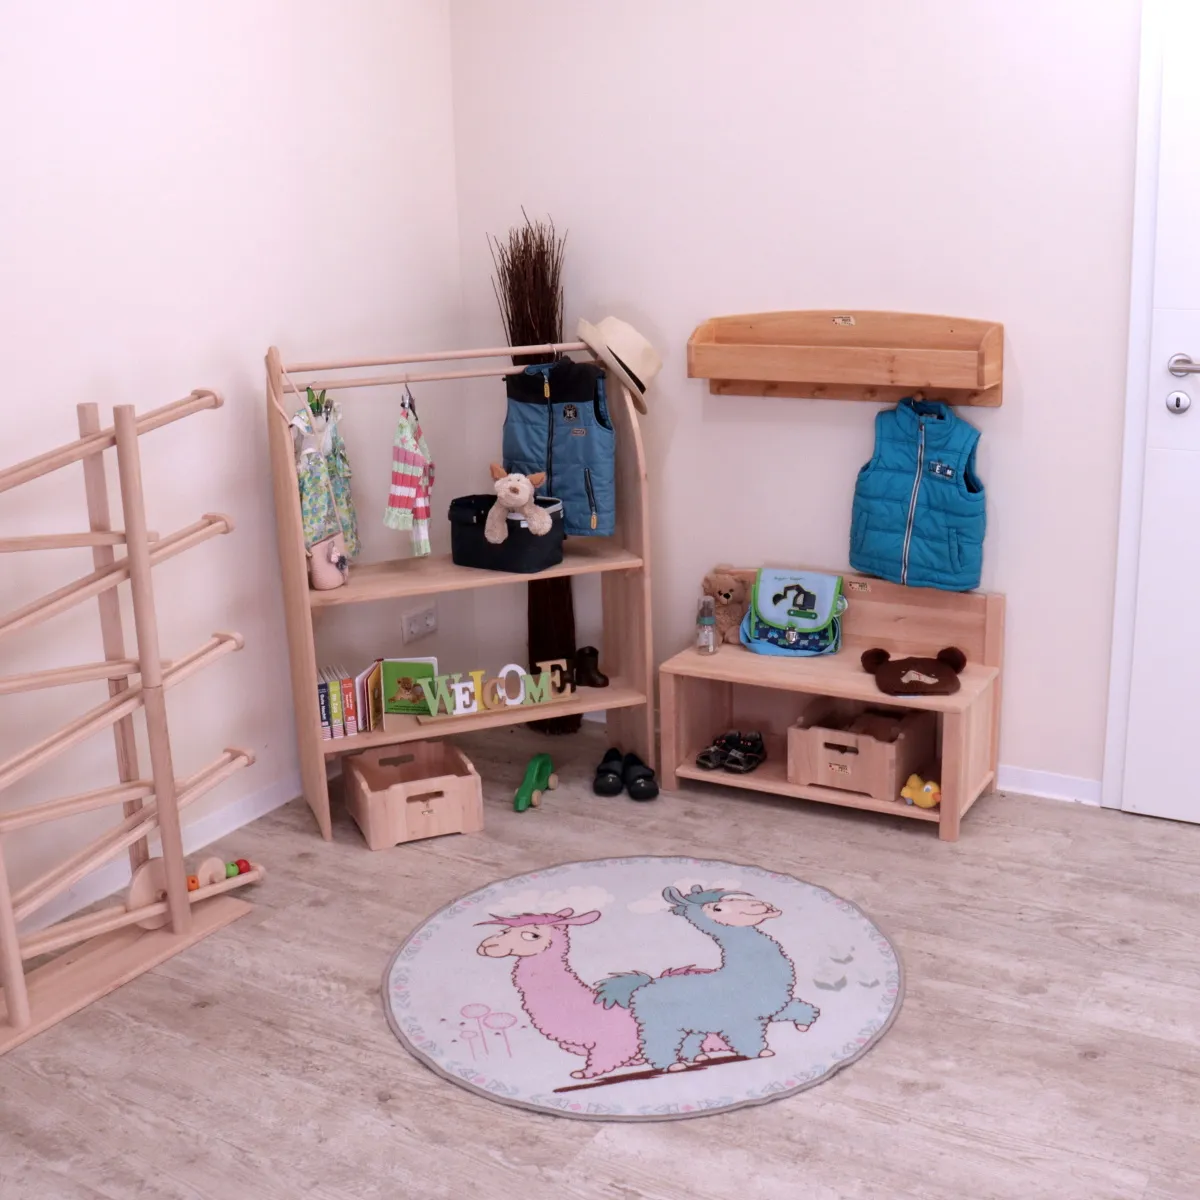 Kinderzimmer mit Spielständer "Kleine Mia", Garderobe, Sitzbank und Kugelbahn.